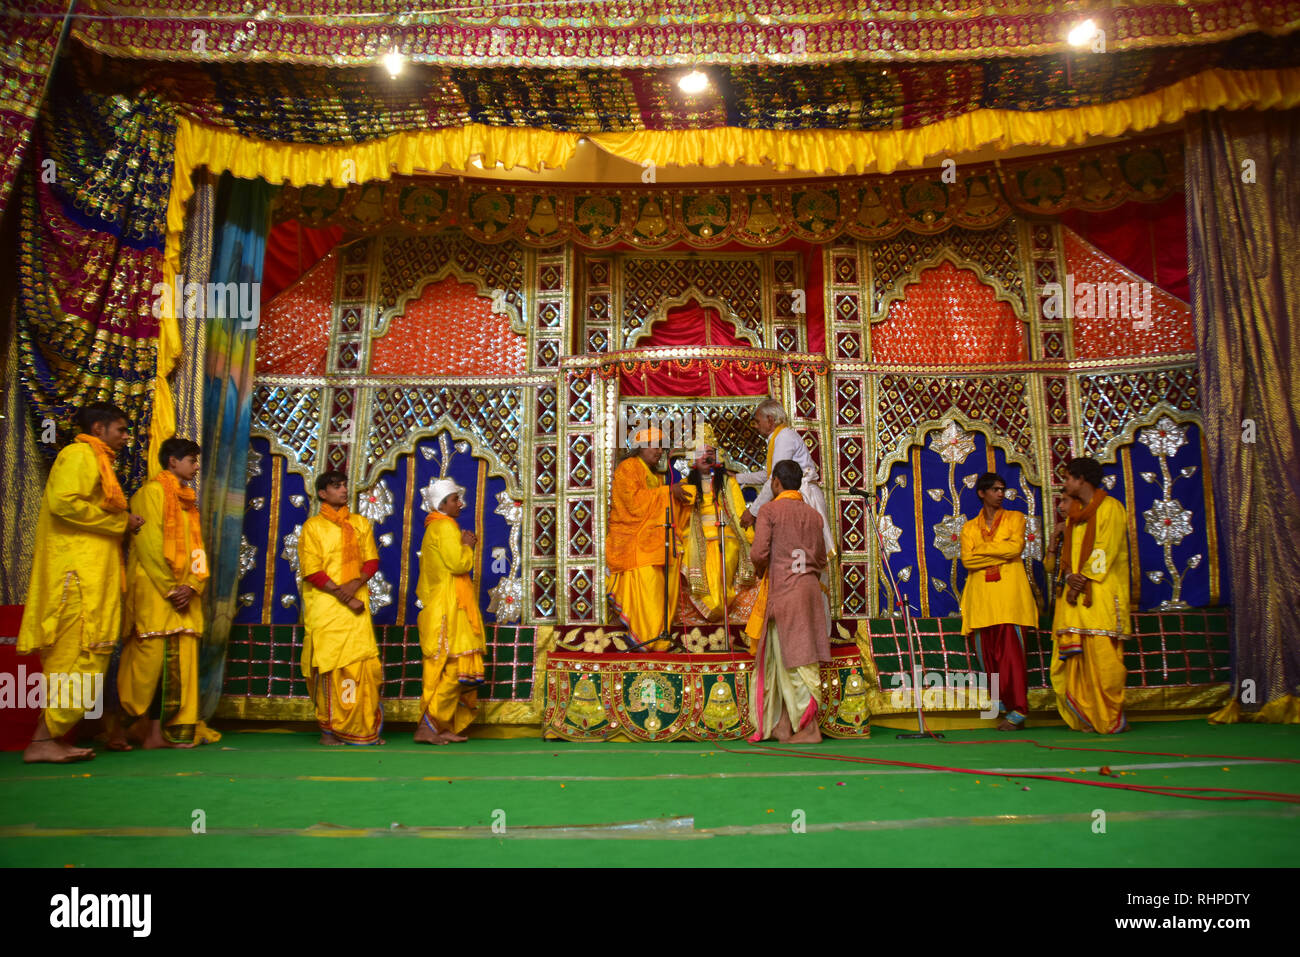 Der Lord Rama Leben zeigen auf der Bühne während der Wallfahrt gesehen. Kumbh Mela, einer der größten Gemeinde des Menschen auf der Erde. 3 crore Leute werden erwartet am Tag der zweiten Shahi Snan am 4. Februar und Arrangements sind entsprechend in Prayagraj gemacht. Stockfoto